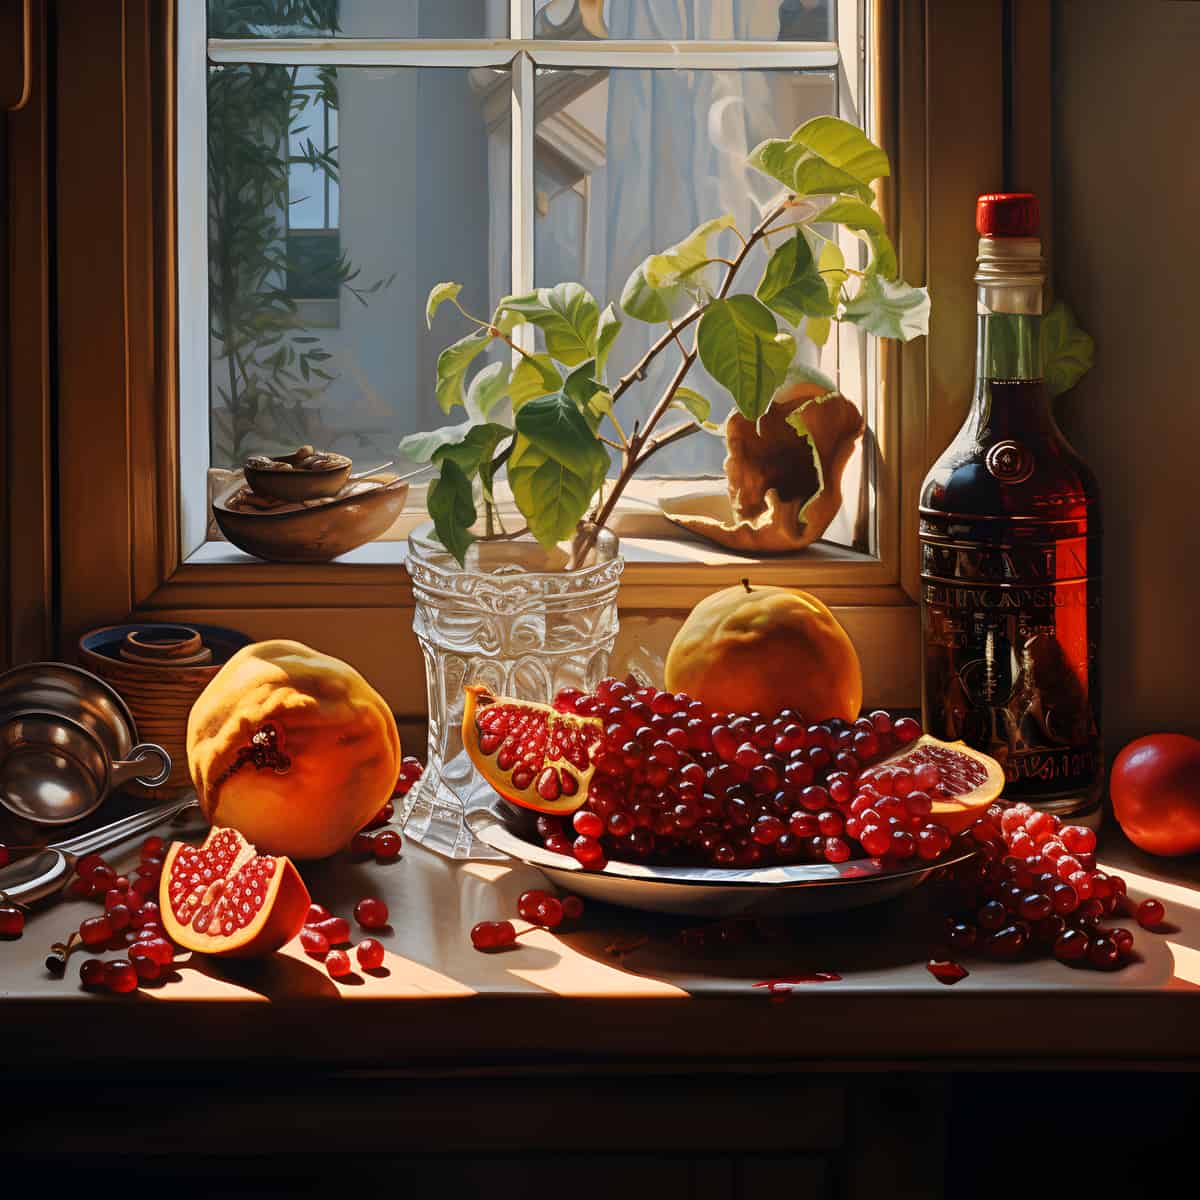 Korlan Fruit on a kitchen counter